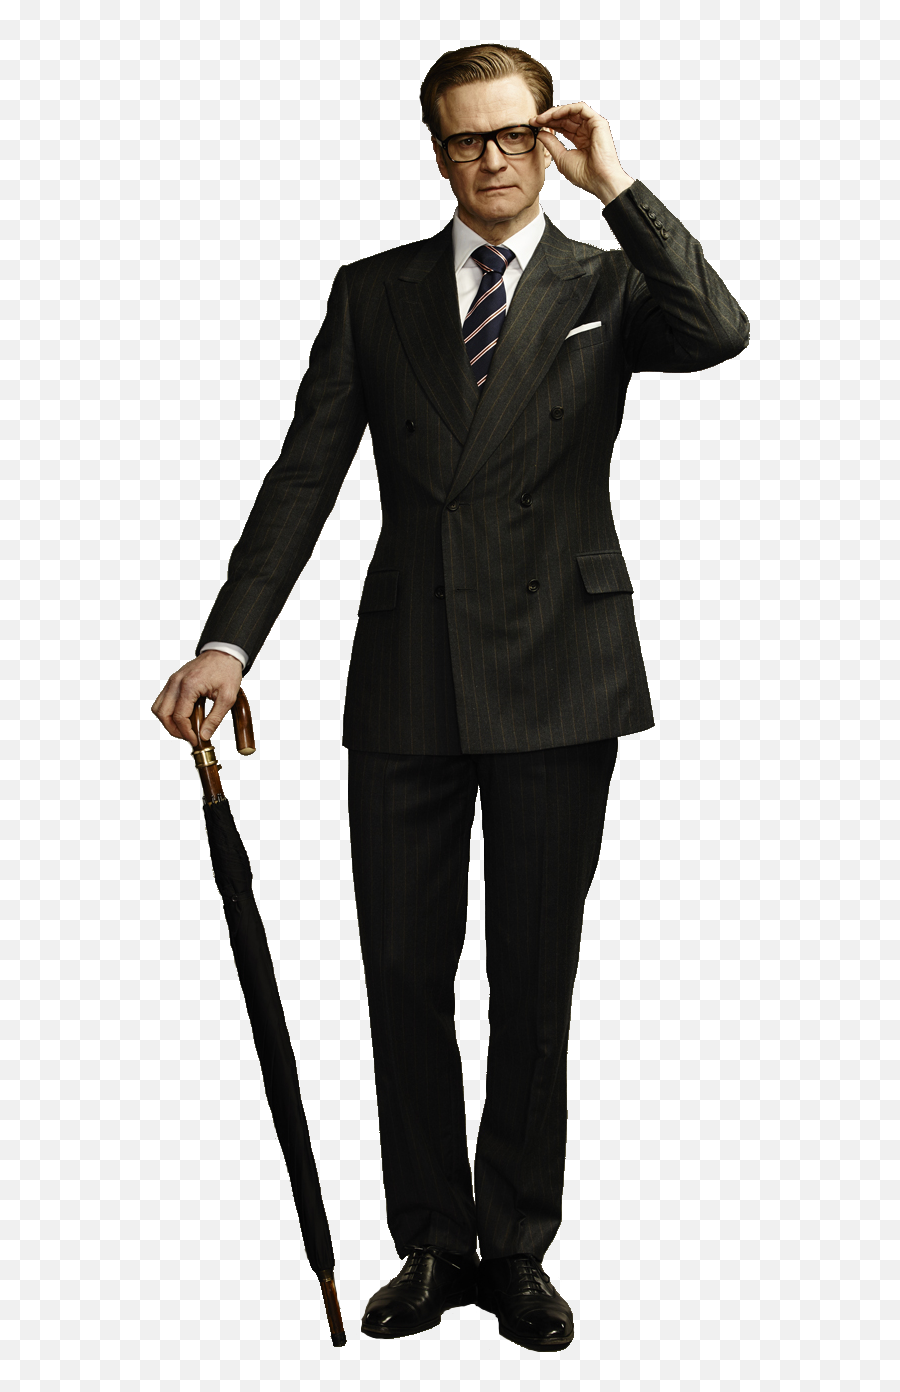 Download Harry Hart - Kingsman The Secret Service Full Suit Colin Firth Kingsman Png,Kingsman Logo Png